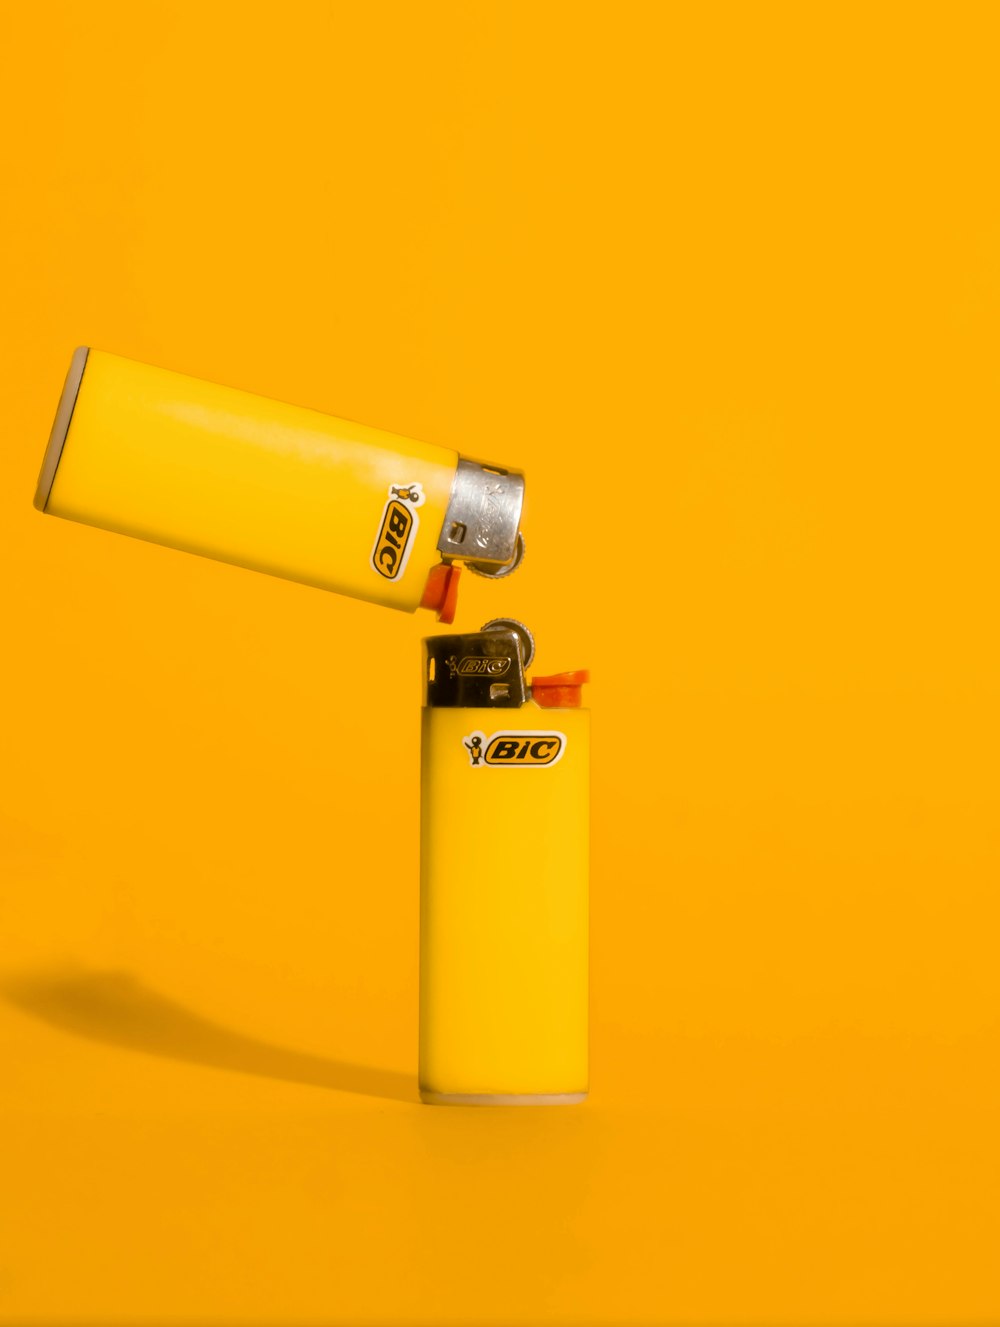 un encendedor amarillo sentado encima de una superficie amarilla